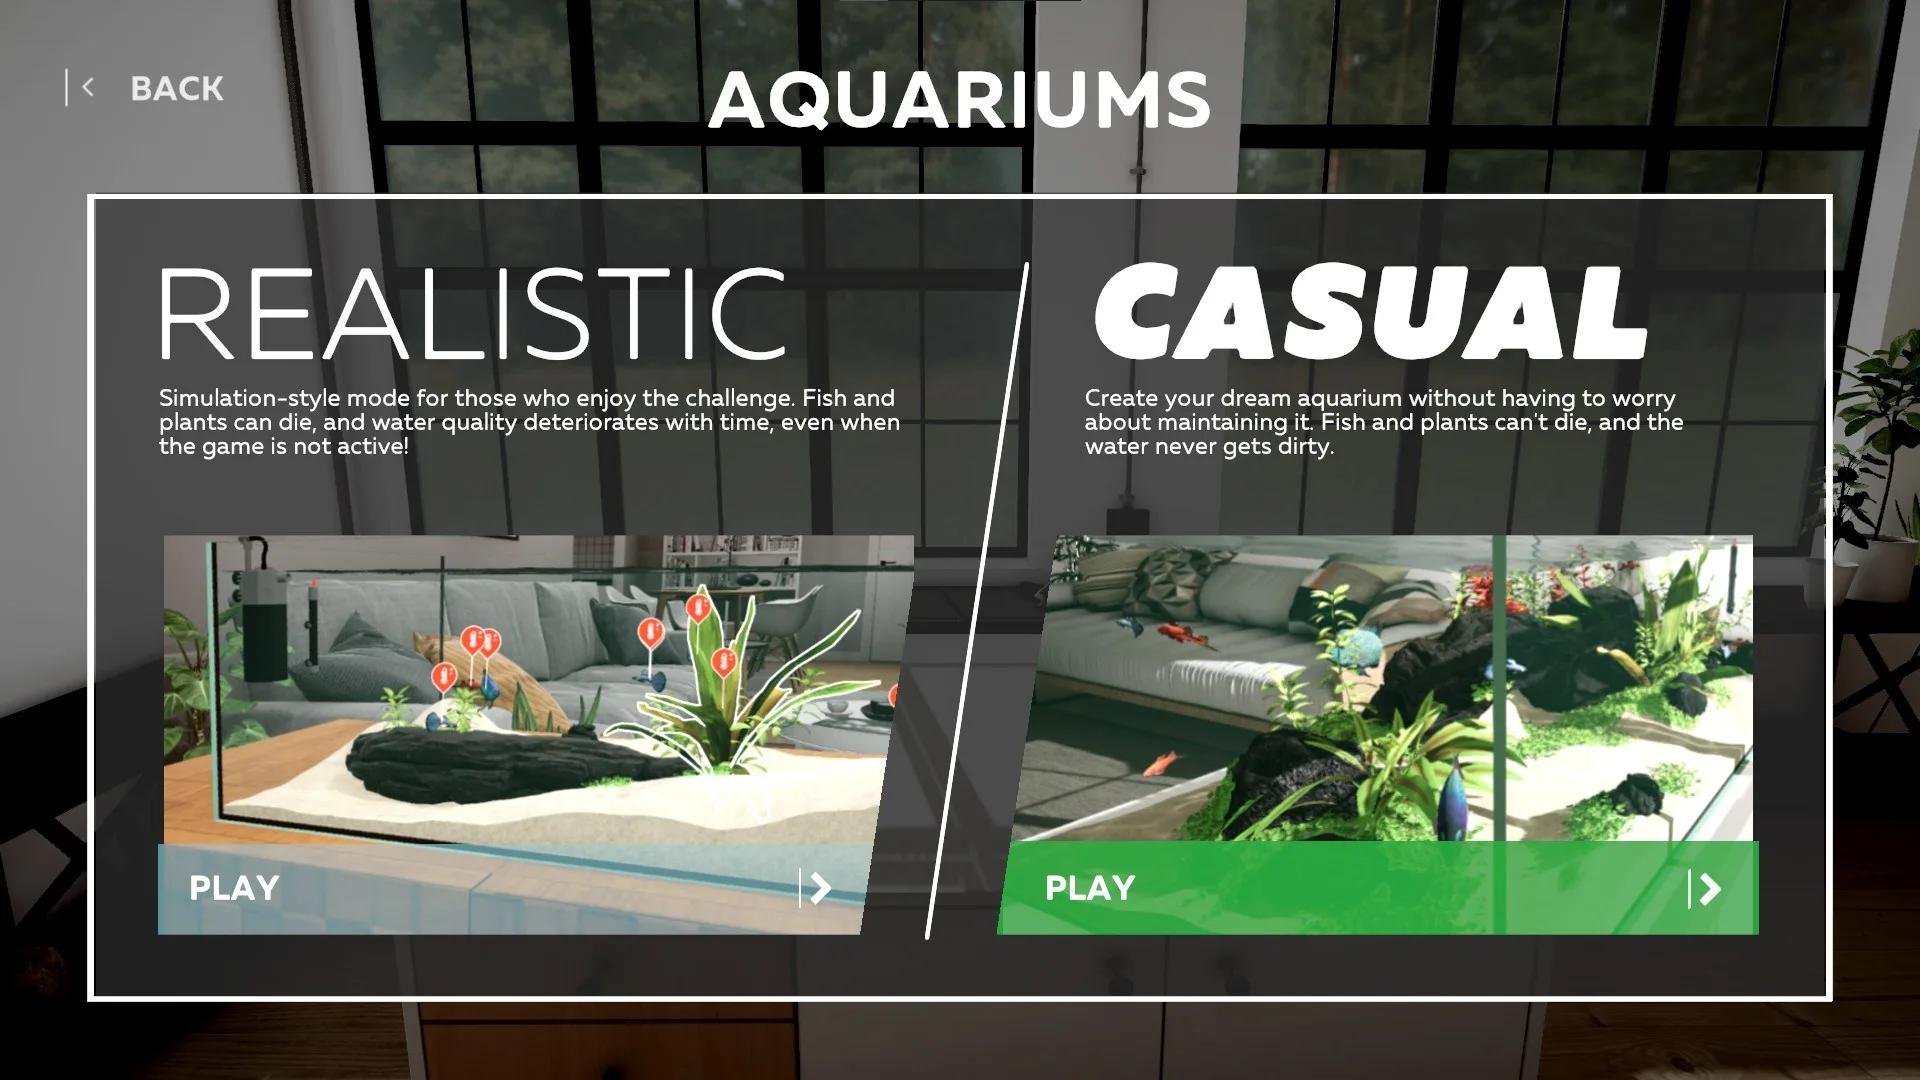 Aquarium Designer - game modes realistic and casual